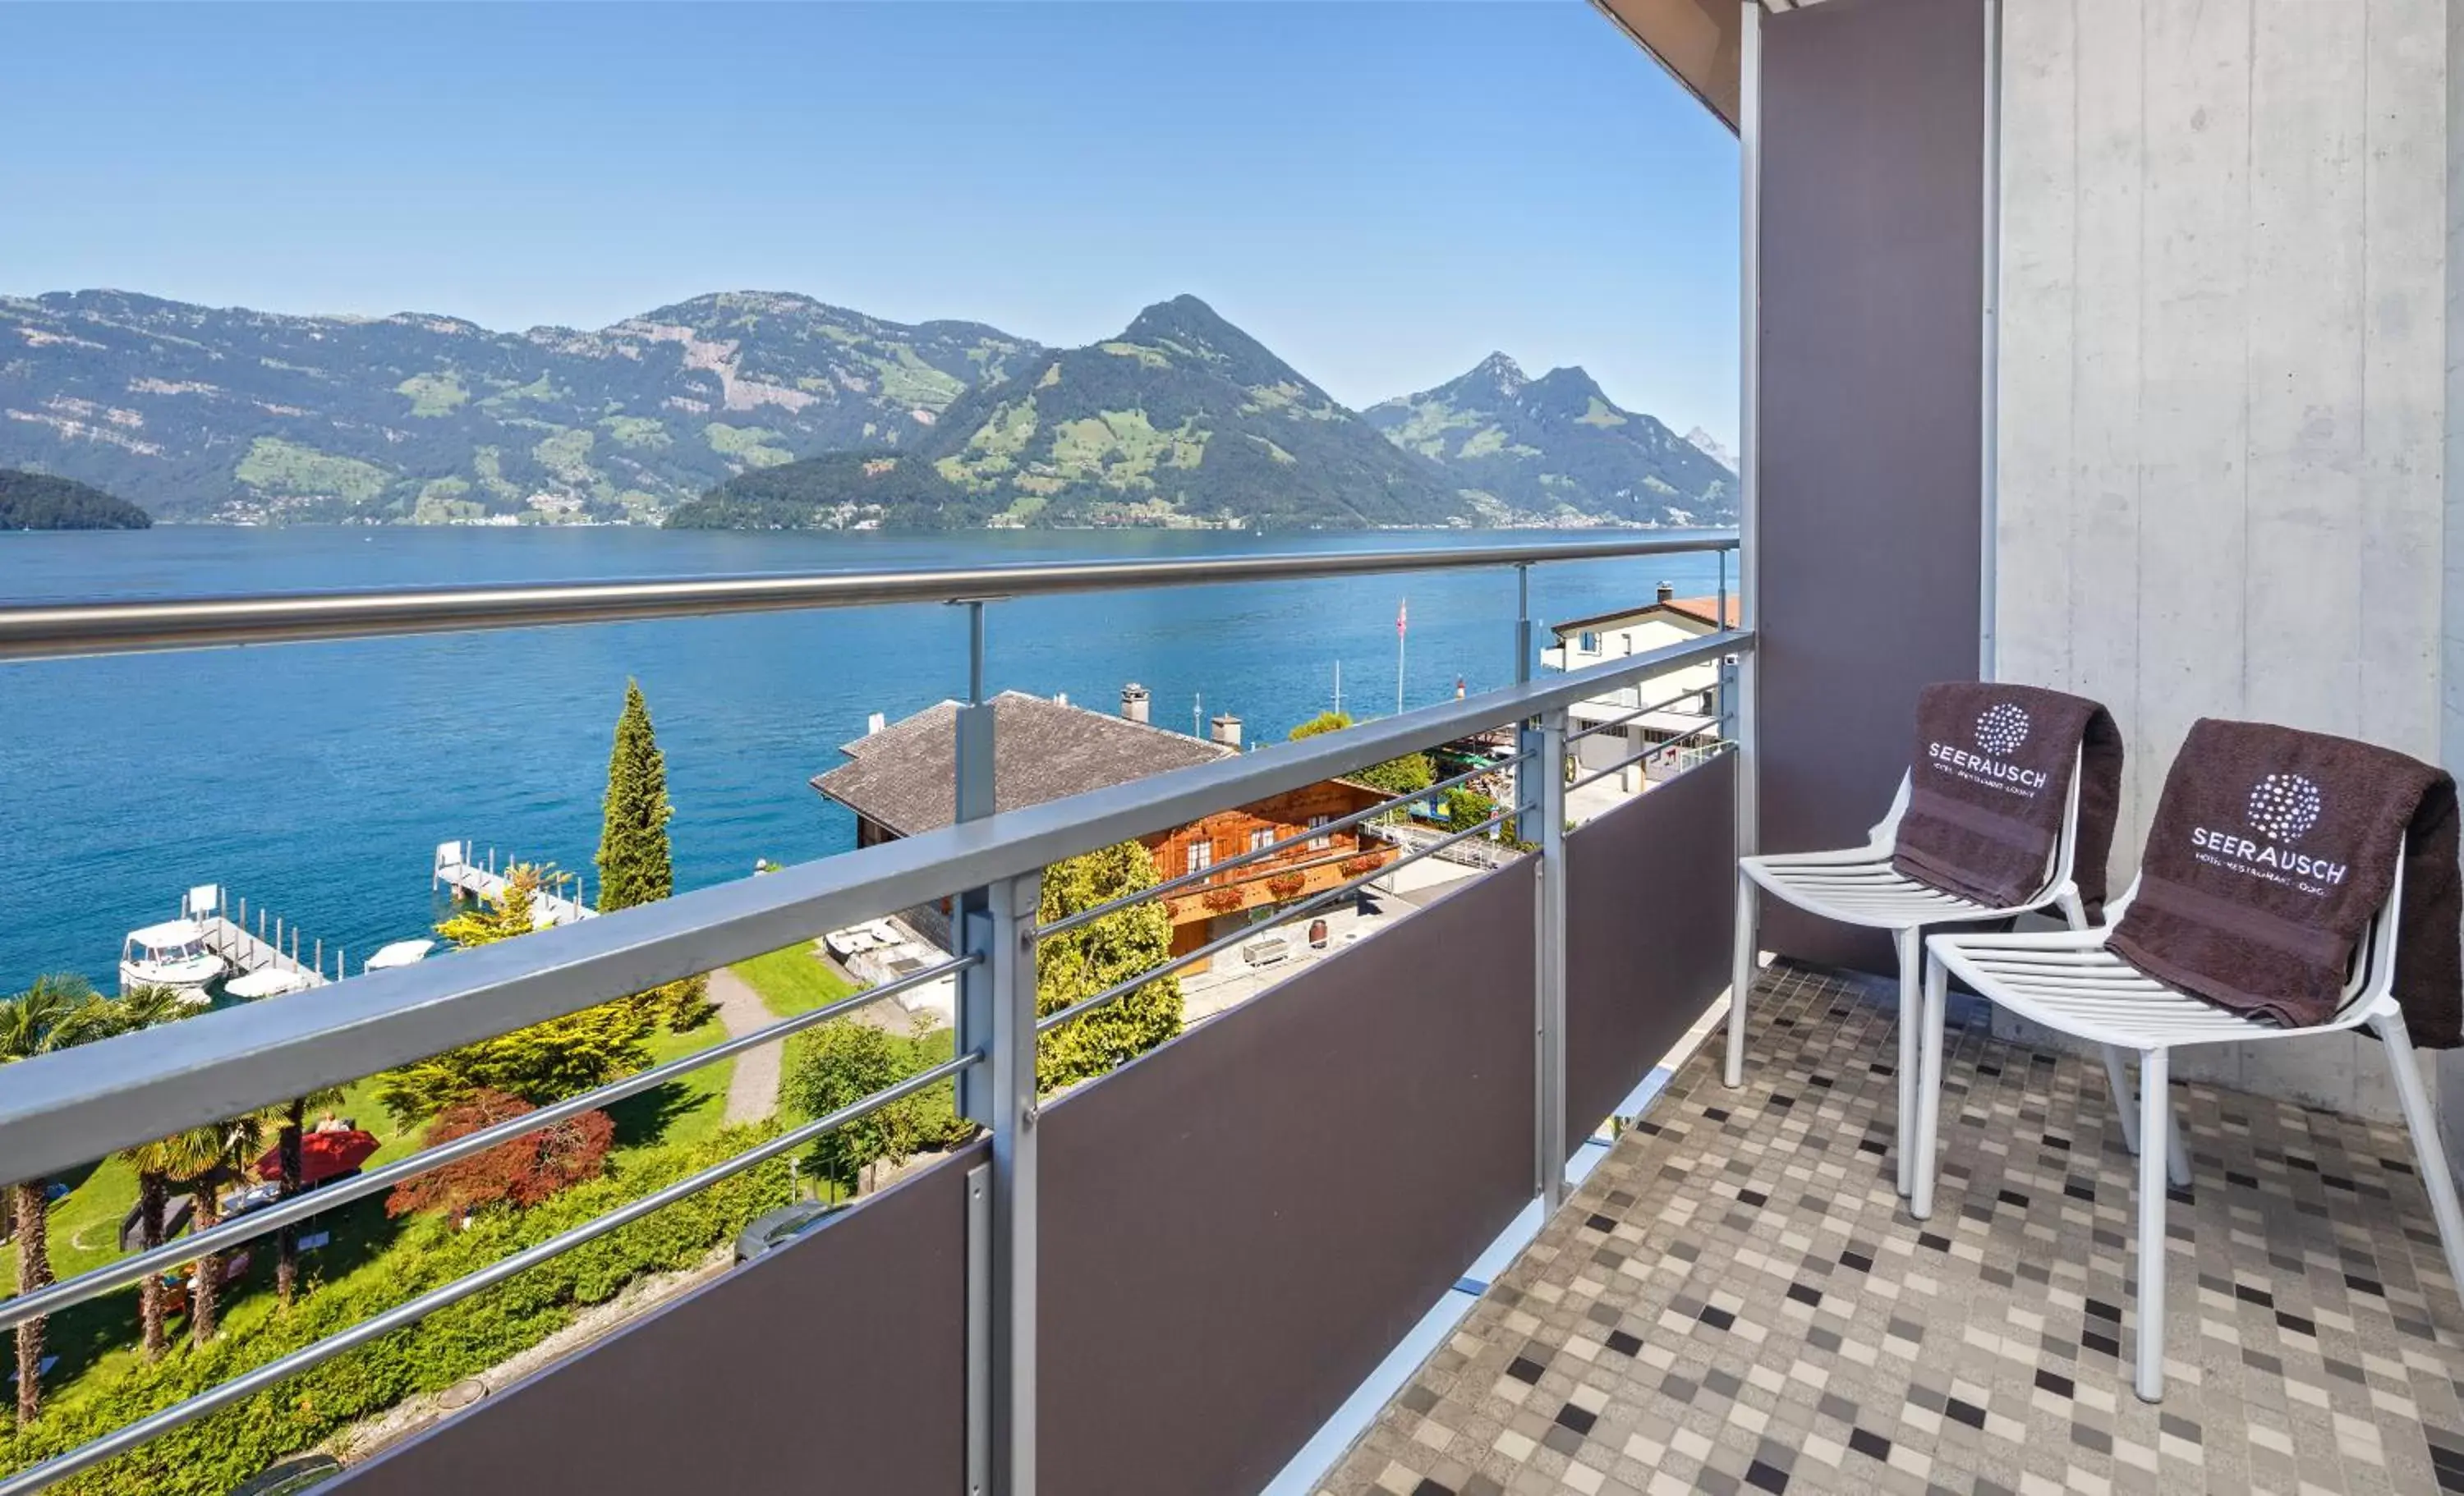 Balcony/Terrace in Seerausch Swiss Quality Hotel